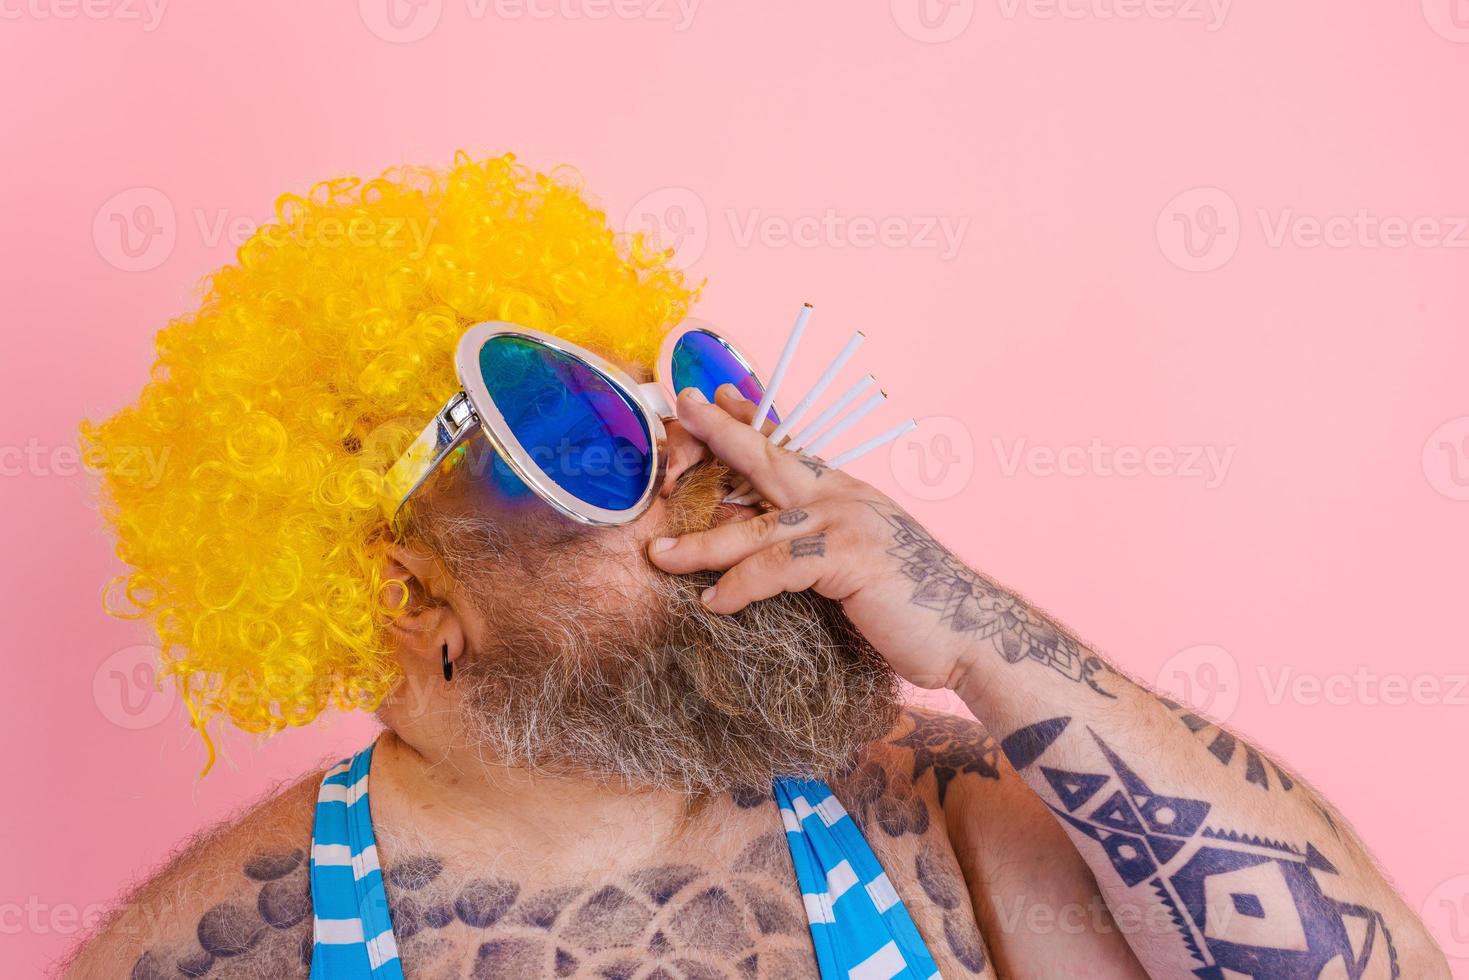 Grasso uomo con barba e parrucca fuma sigarette foto